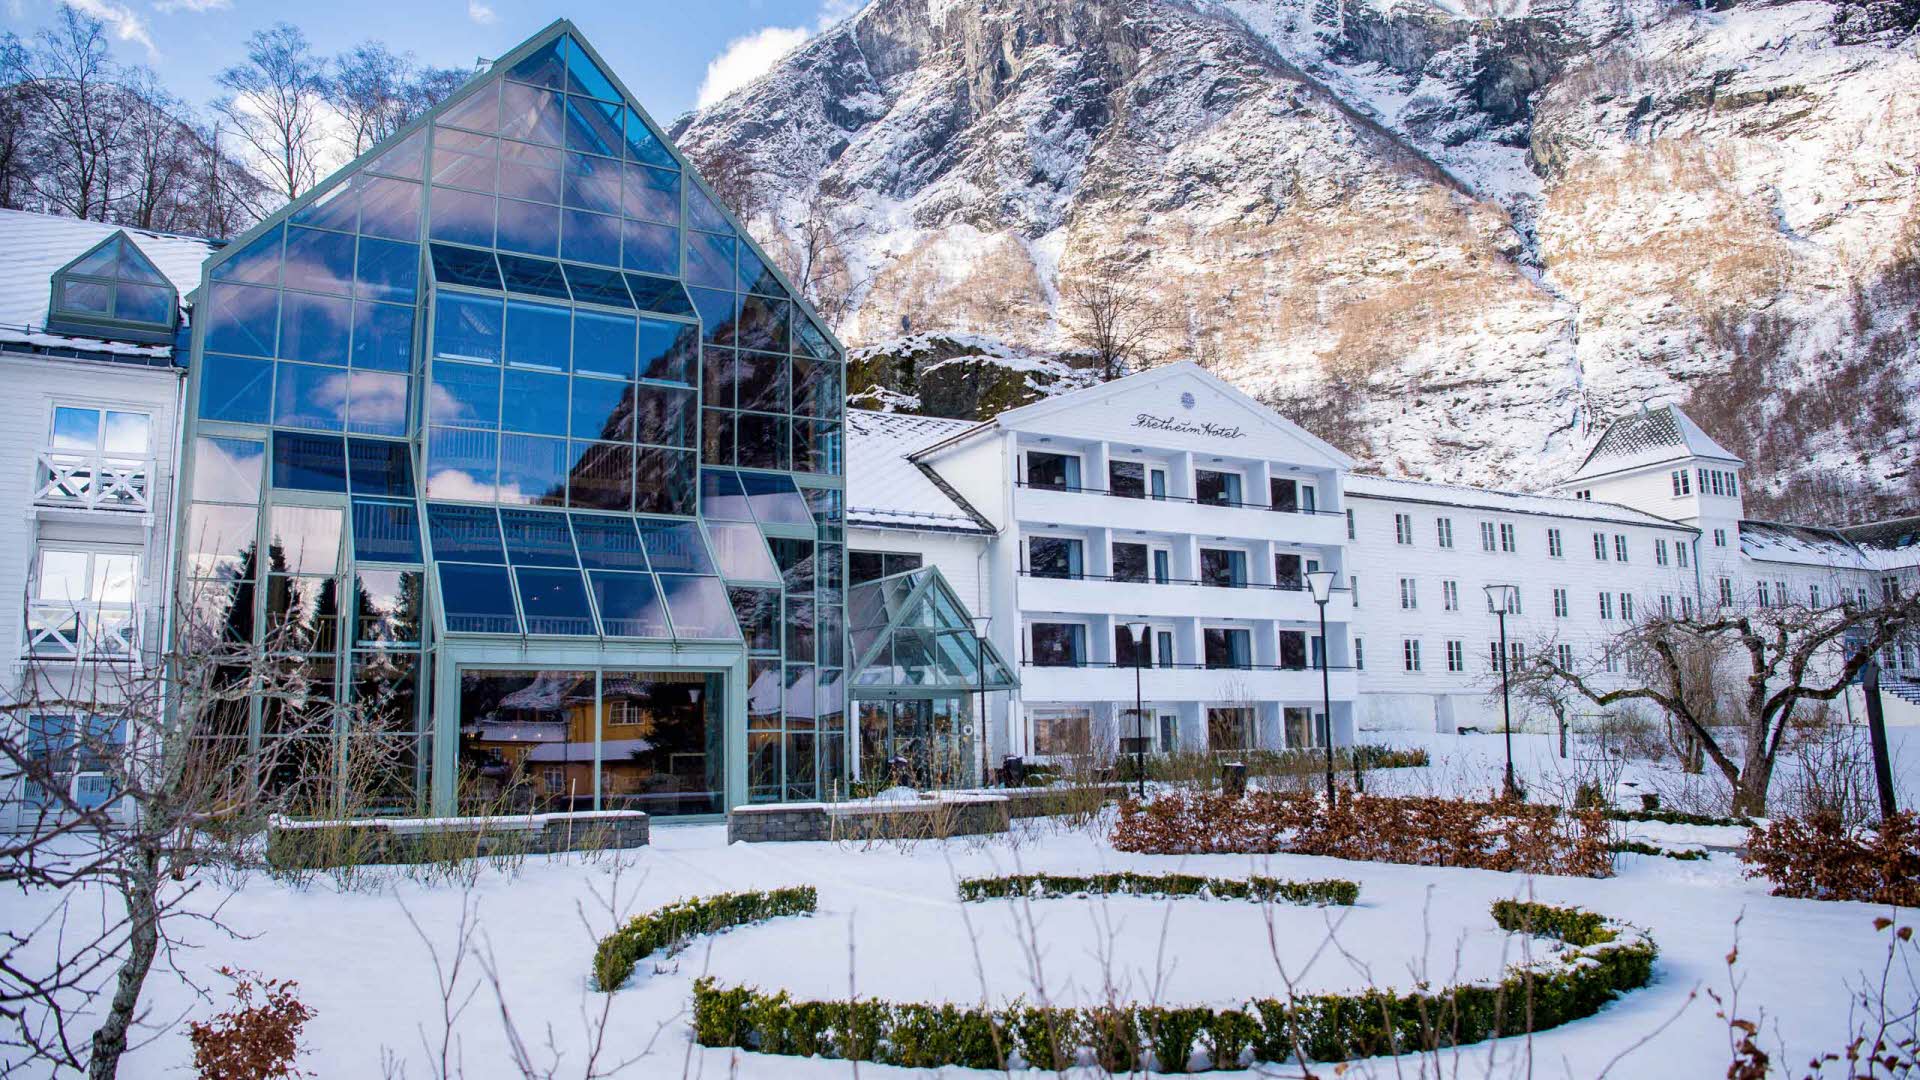 正面に雪に覆われた庭園があり、背後に白い山々がそびえるフレトハイムホテル。